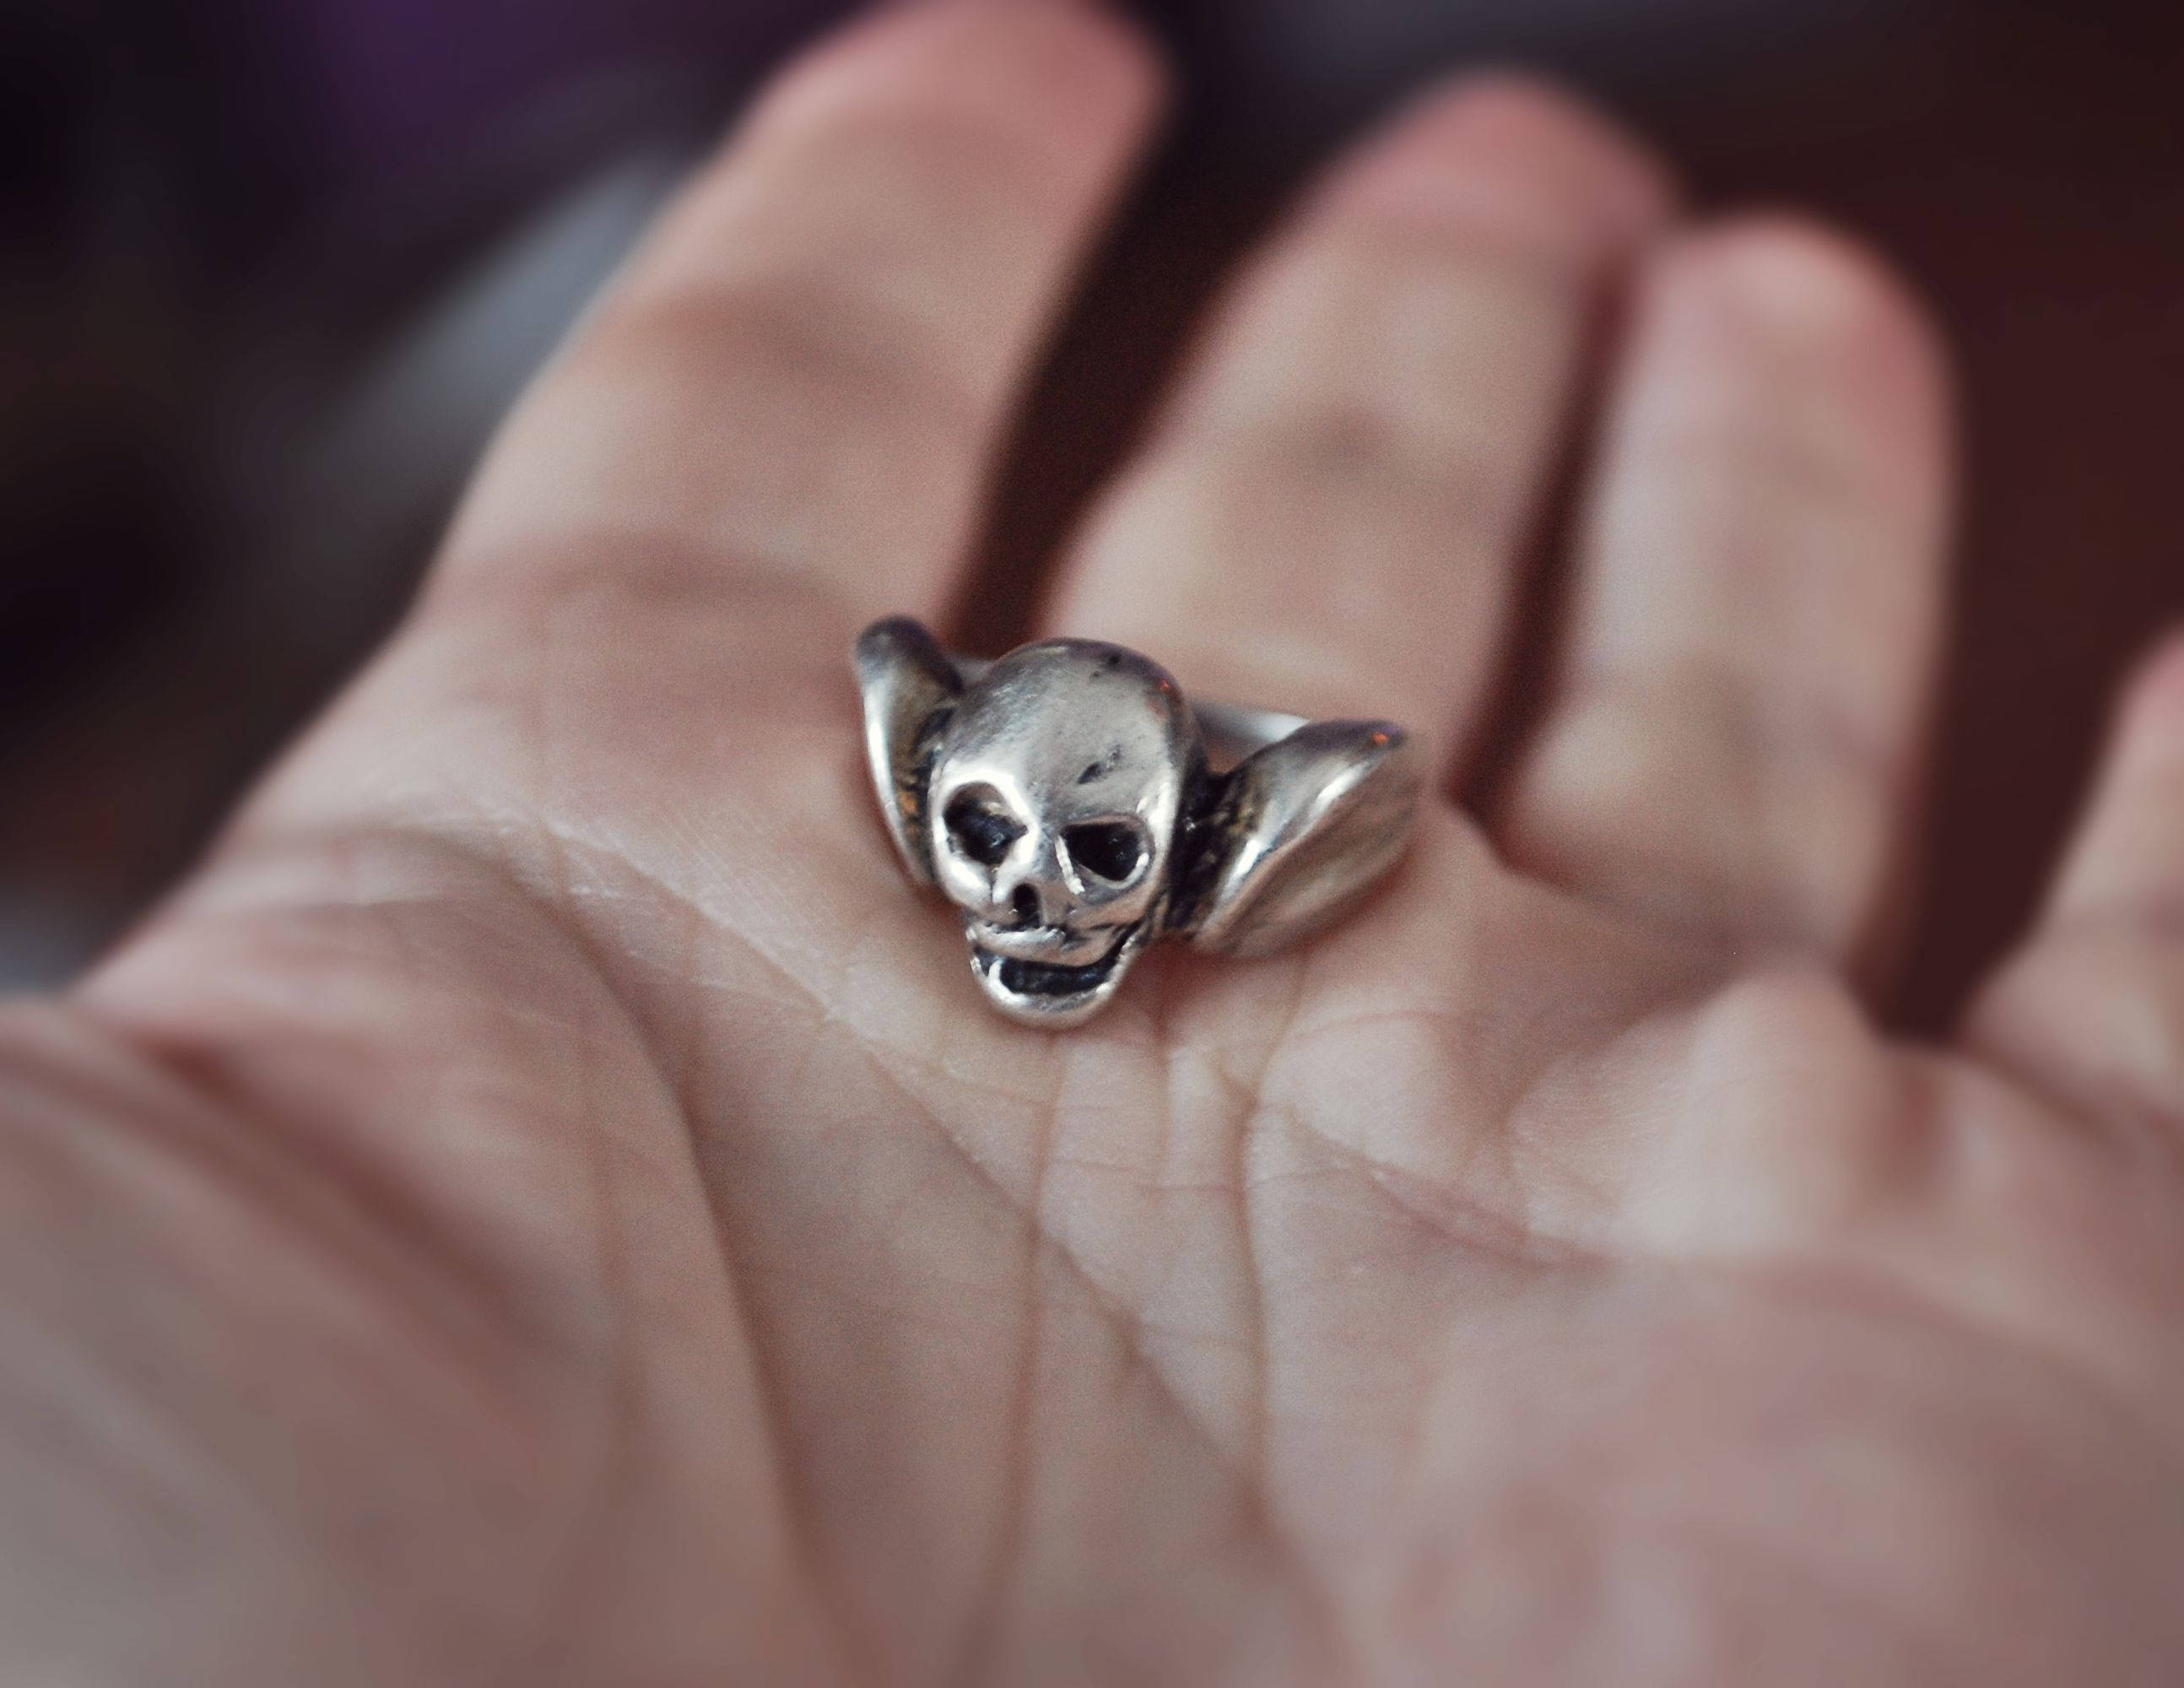 Skull Ring - Size 5 - Sterling Silver Skull Ring - Skull Jewelry - Silver Skull Ring